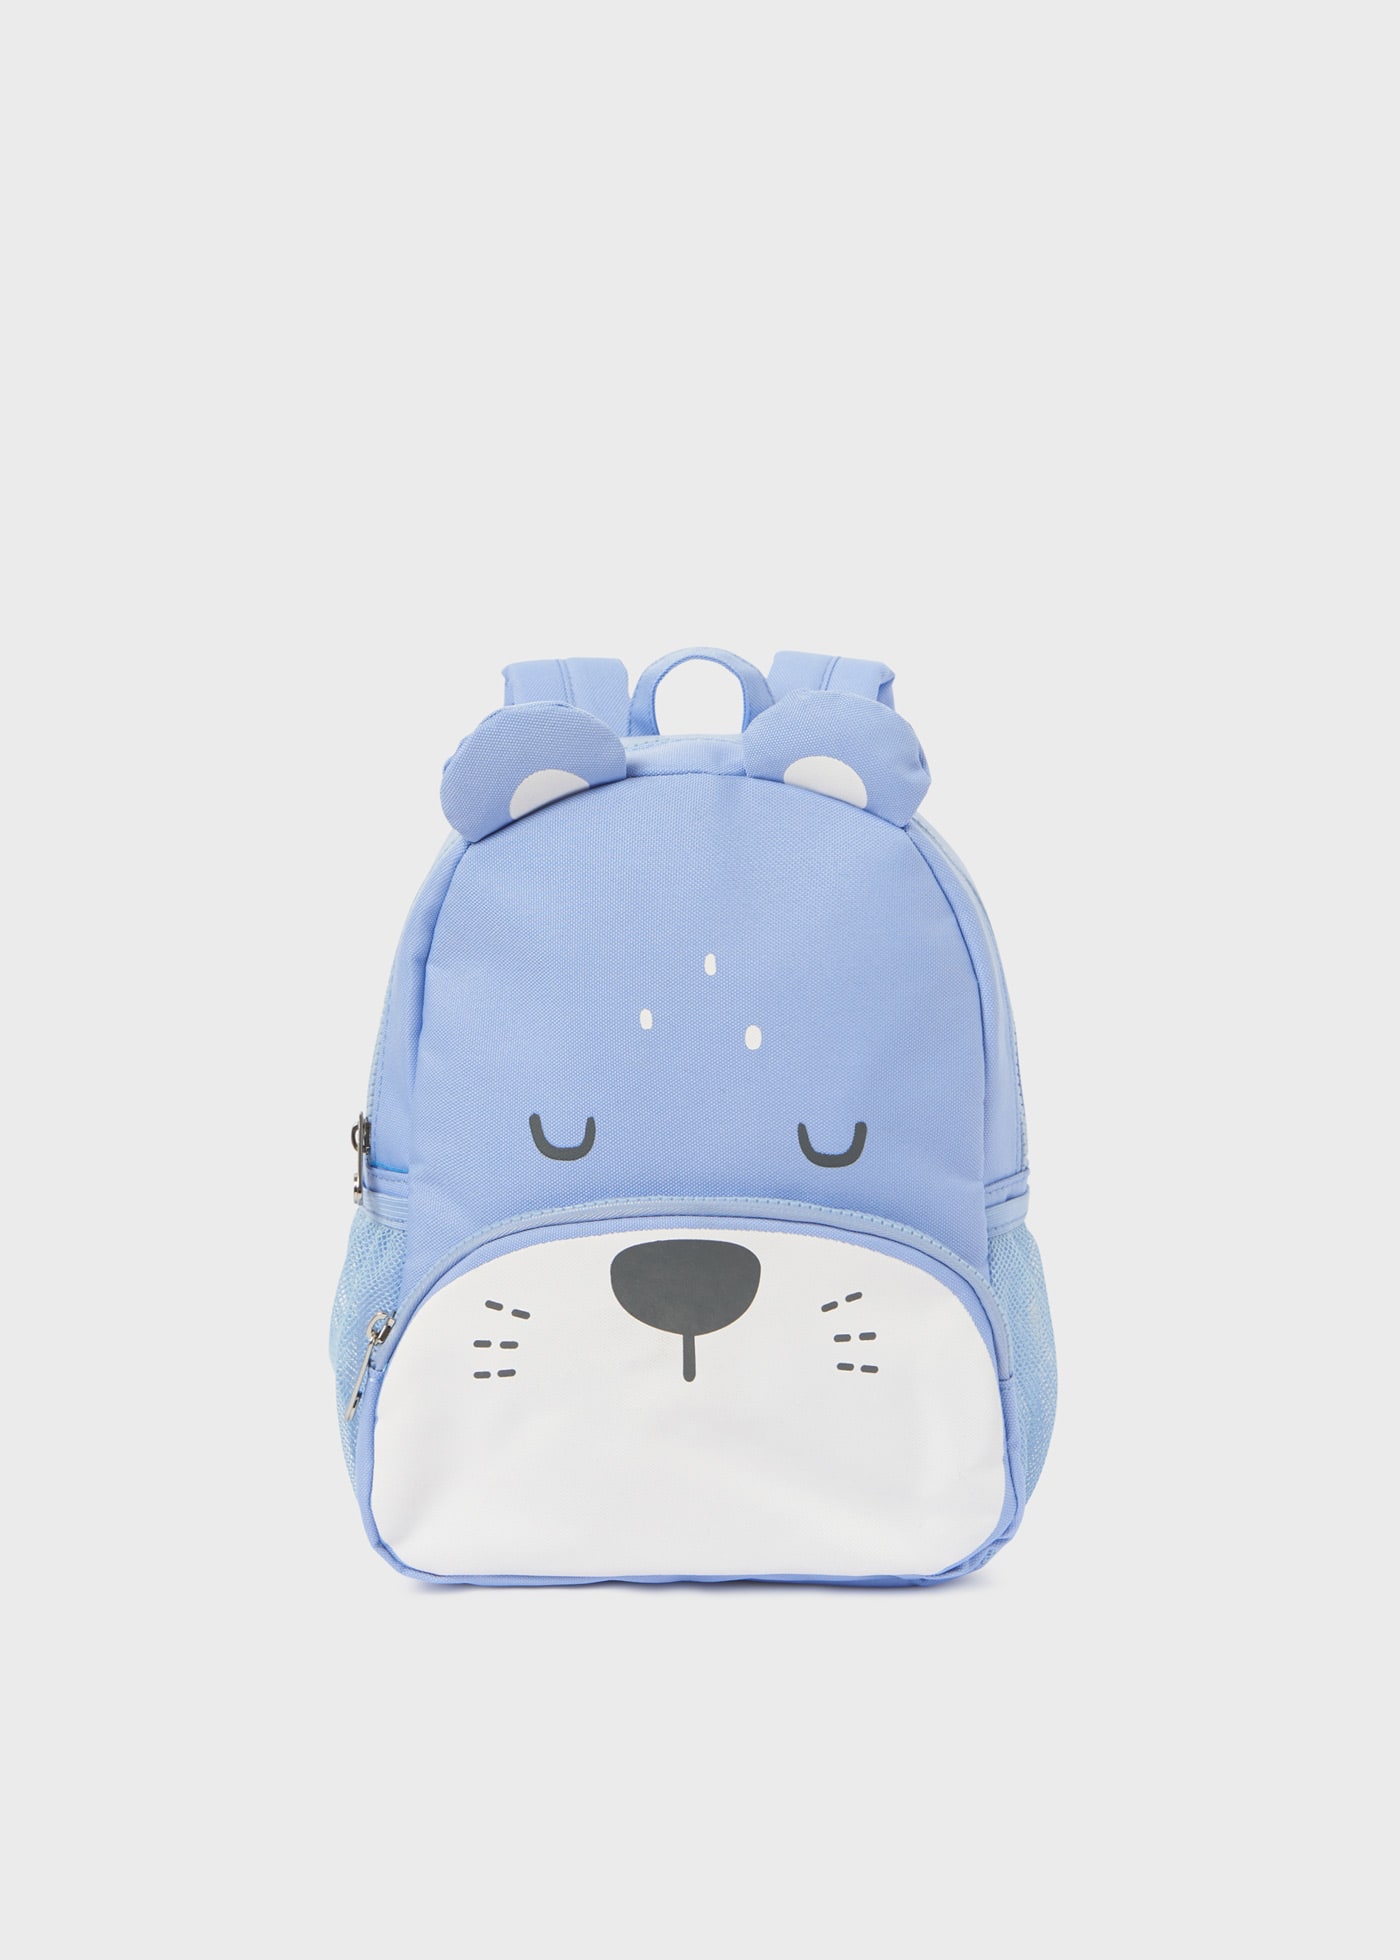 Nursery backpack baby